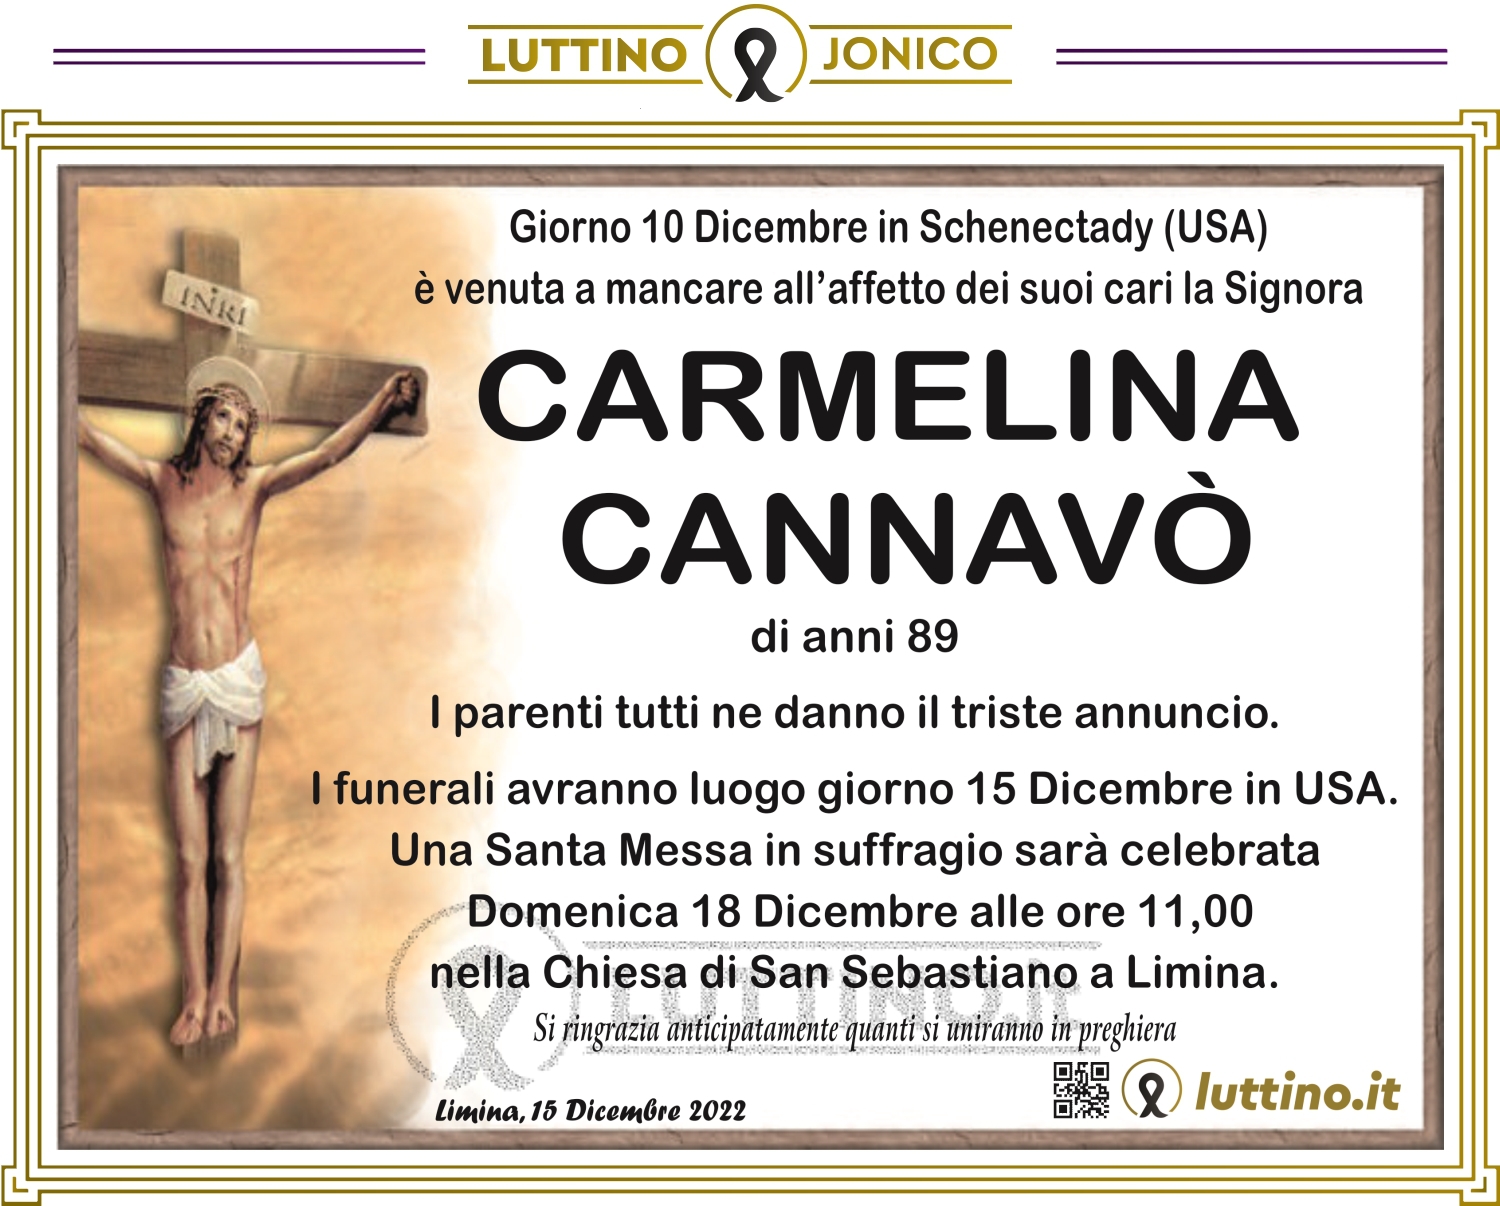 Carmelina Cannavò